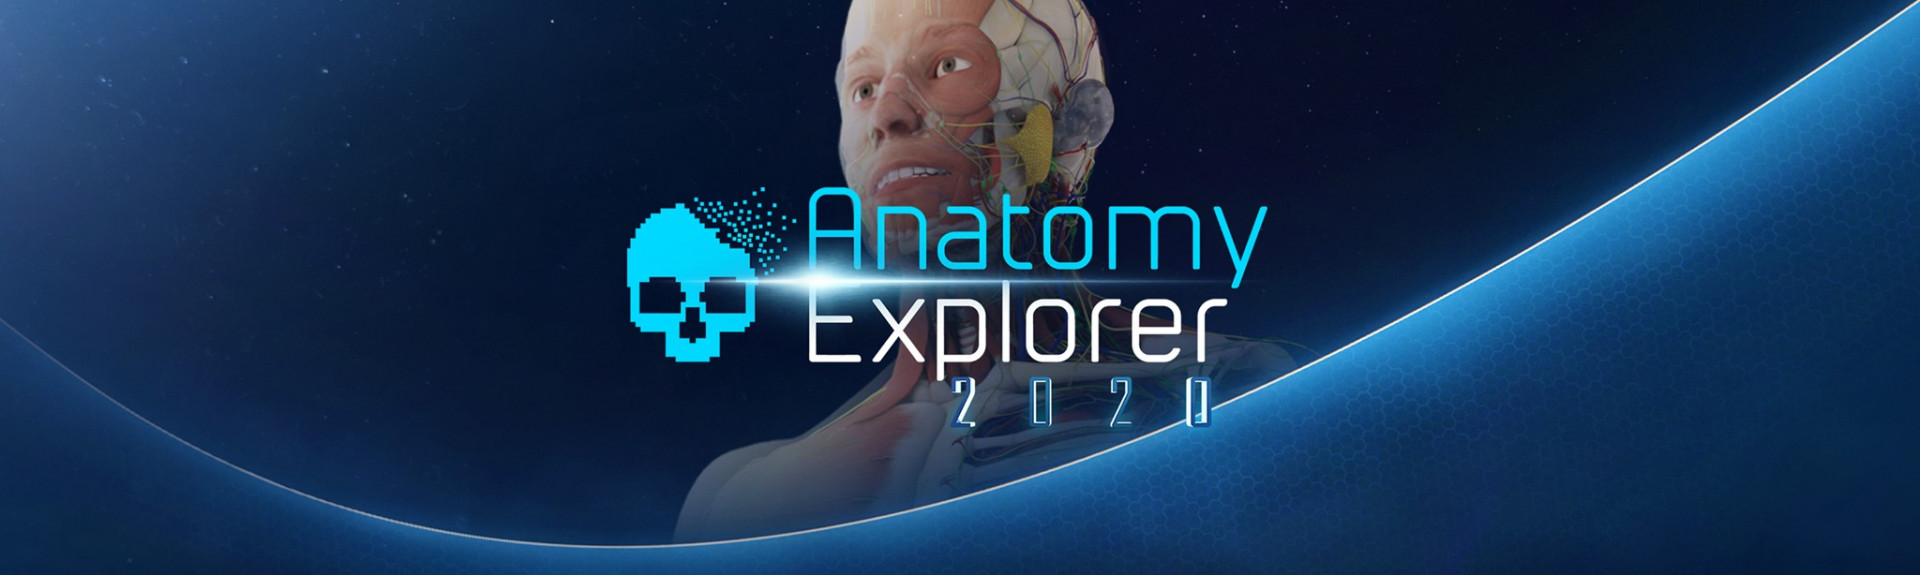 Anatomy Explorer 2020